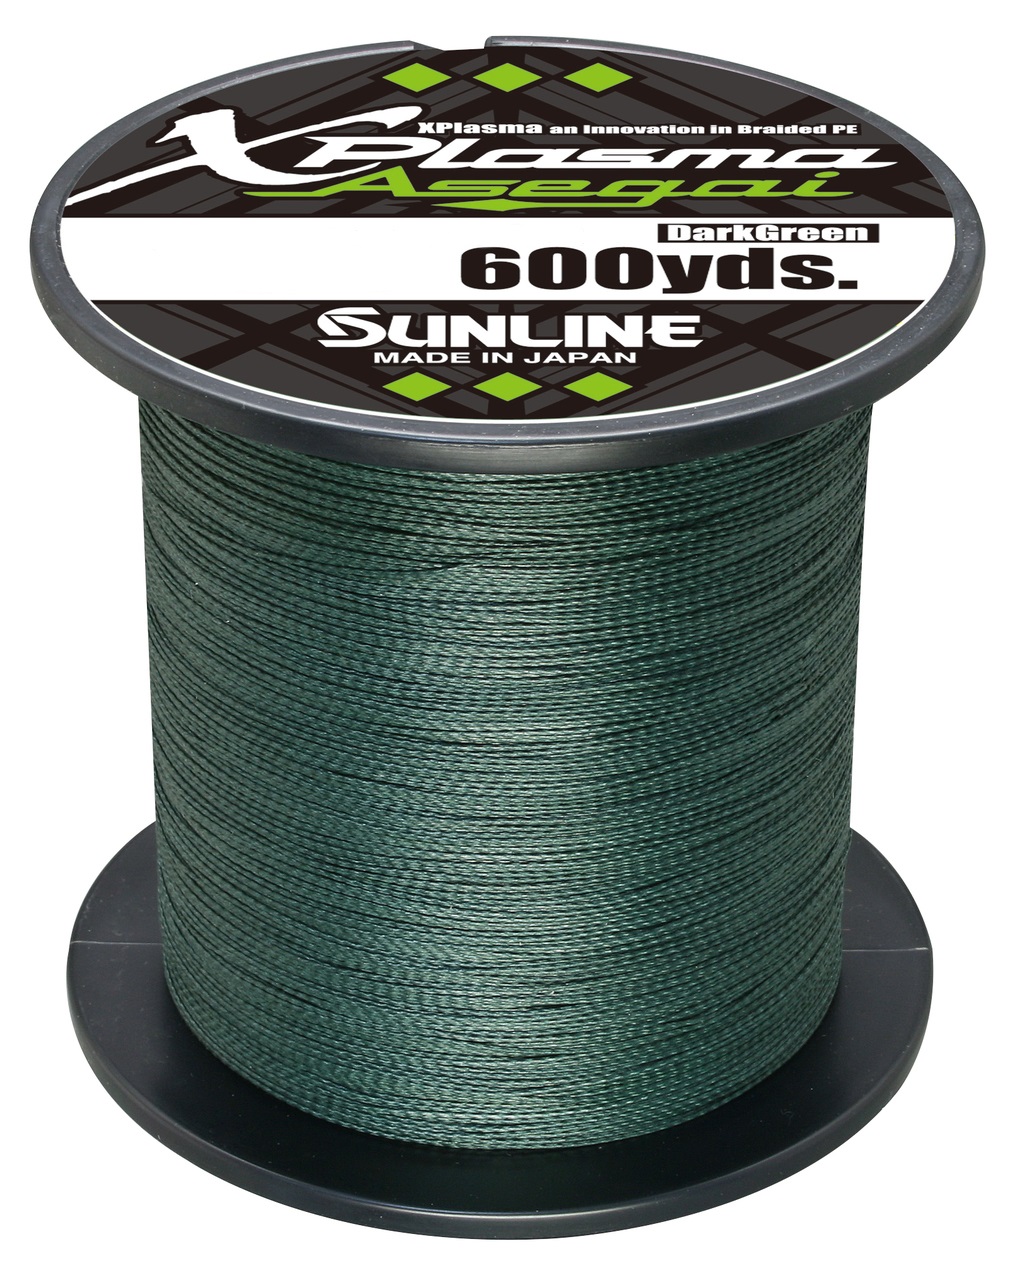 Sunline Xplasma Asegai 50lb 600yd Dark Green Braided Line